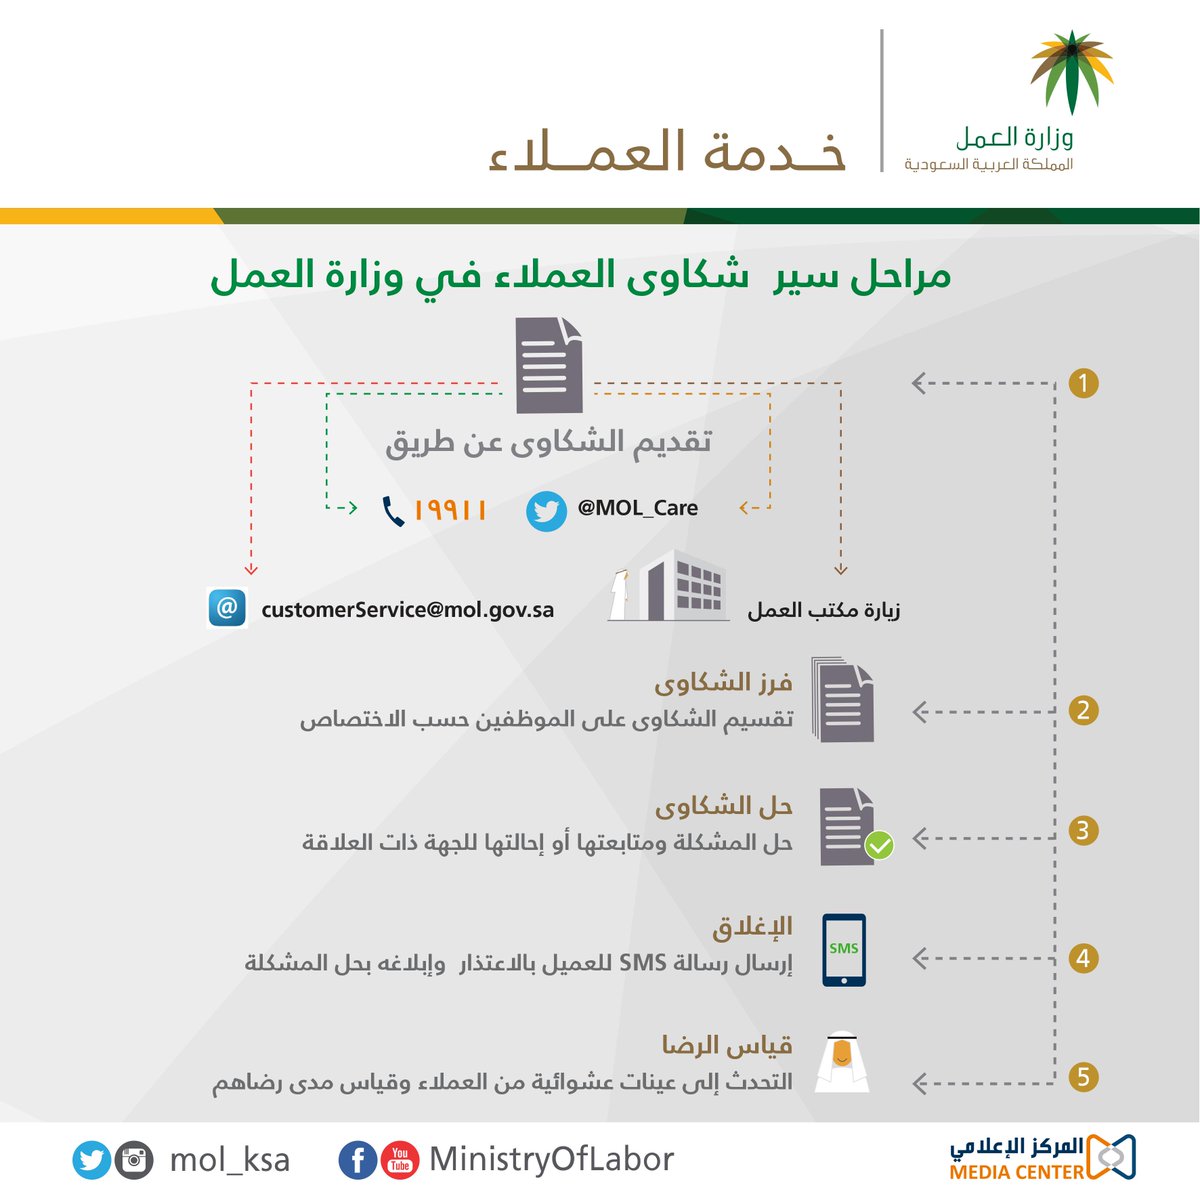 وزارة الموارد البشرية والتنمية الاجتماعية على تويتر 5 مراحل تمر